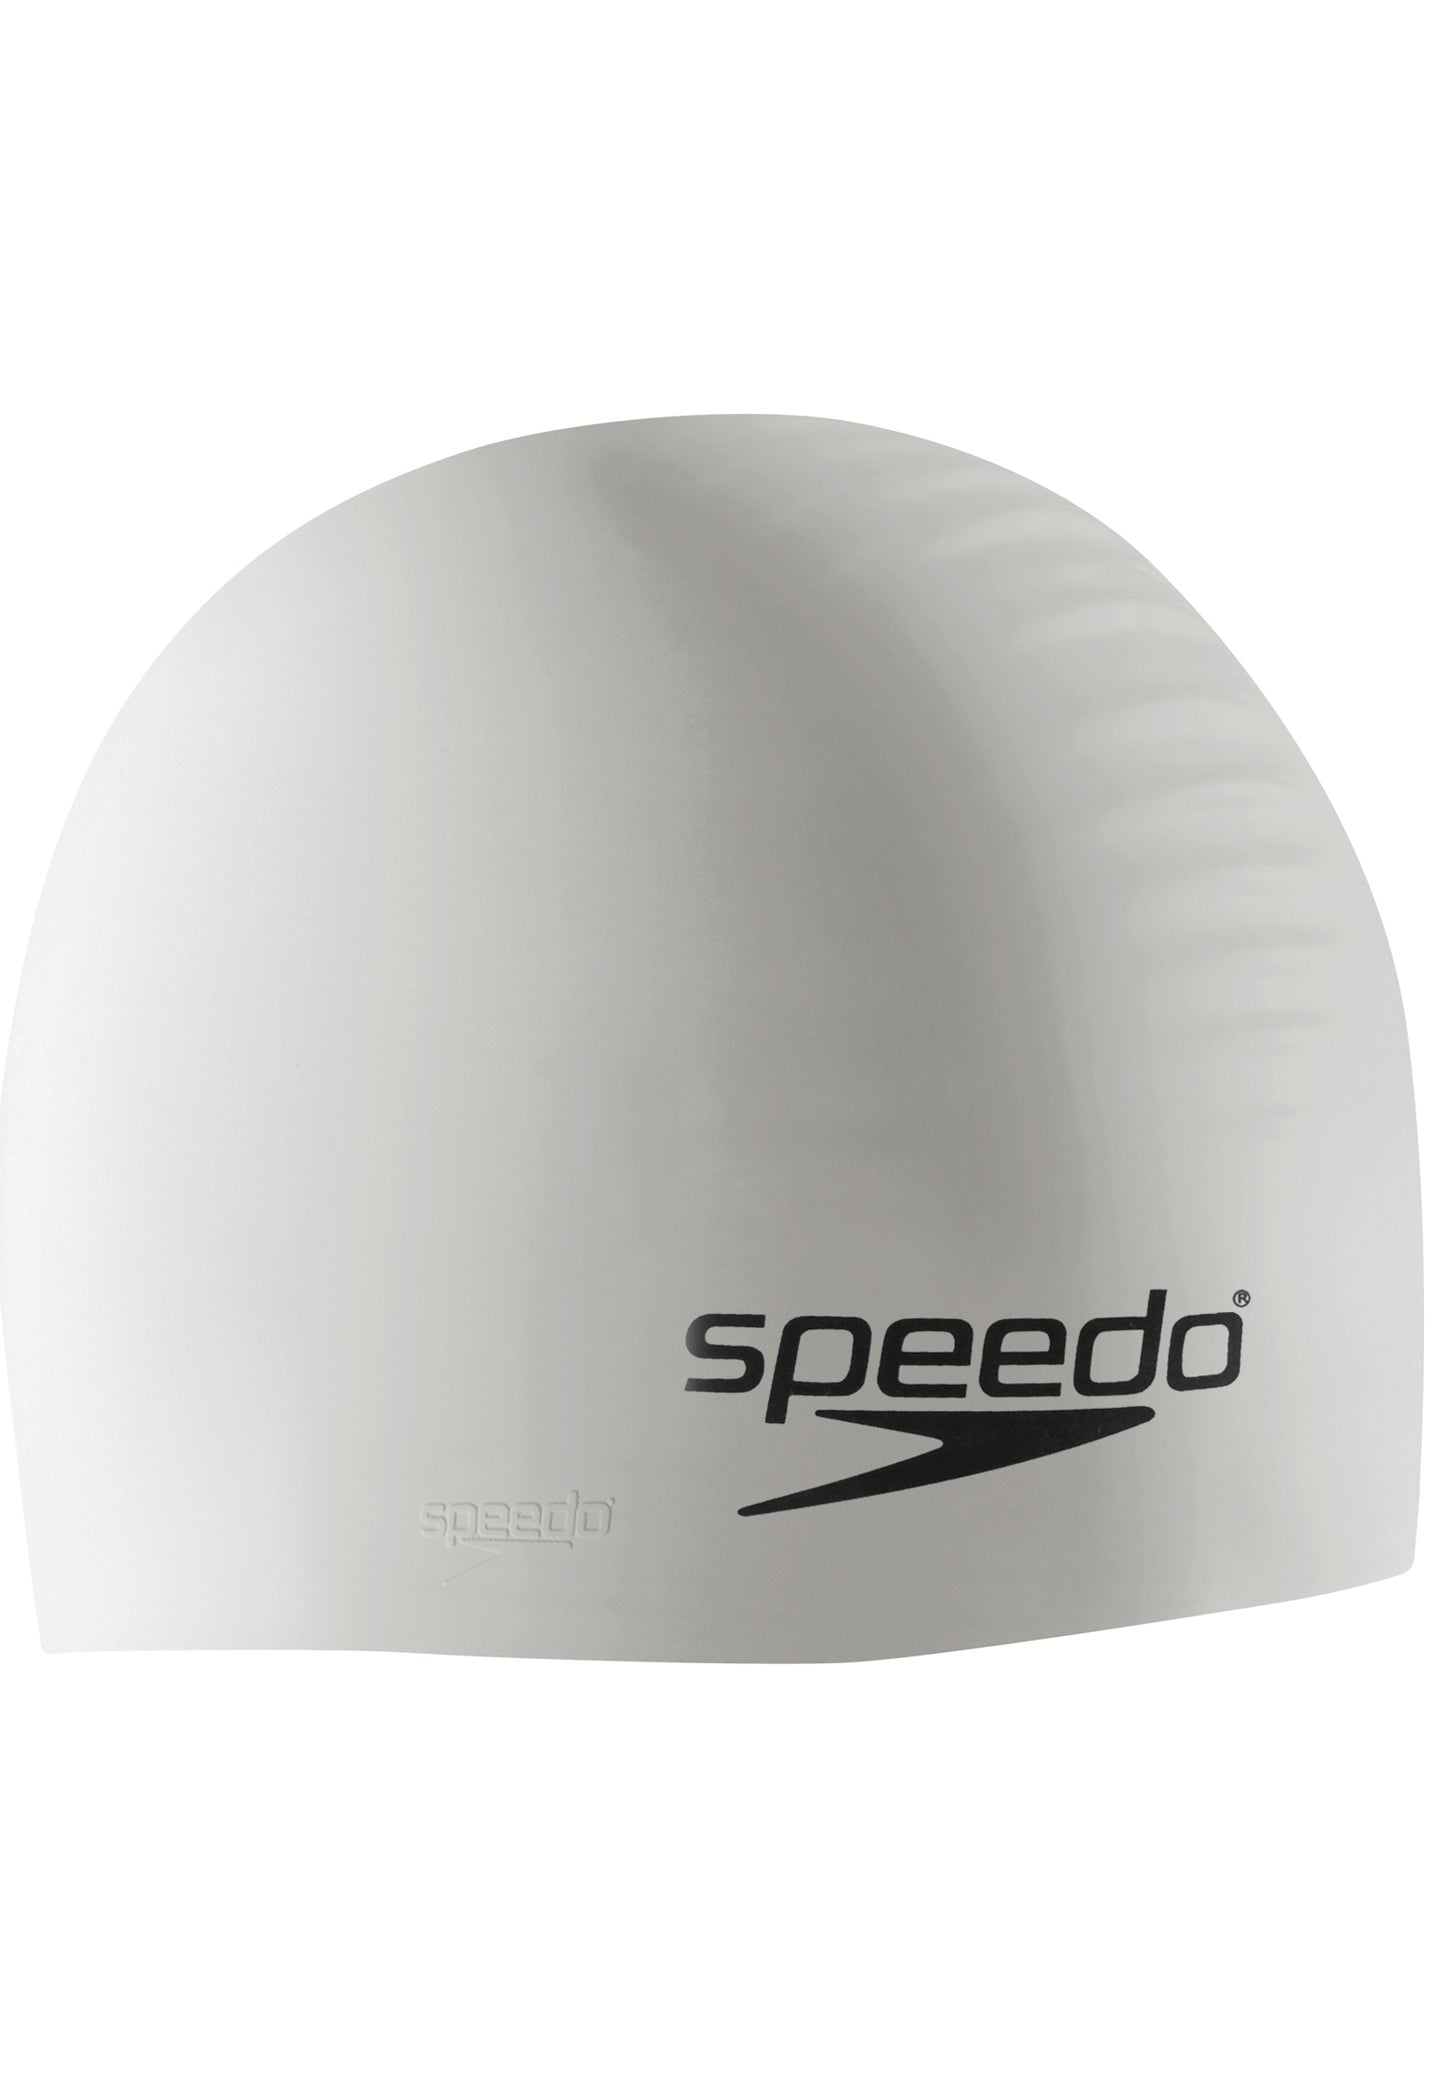 SPEEDO:SOLID SILCONE CAP - WHITE